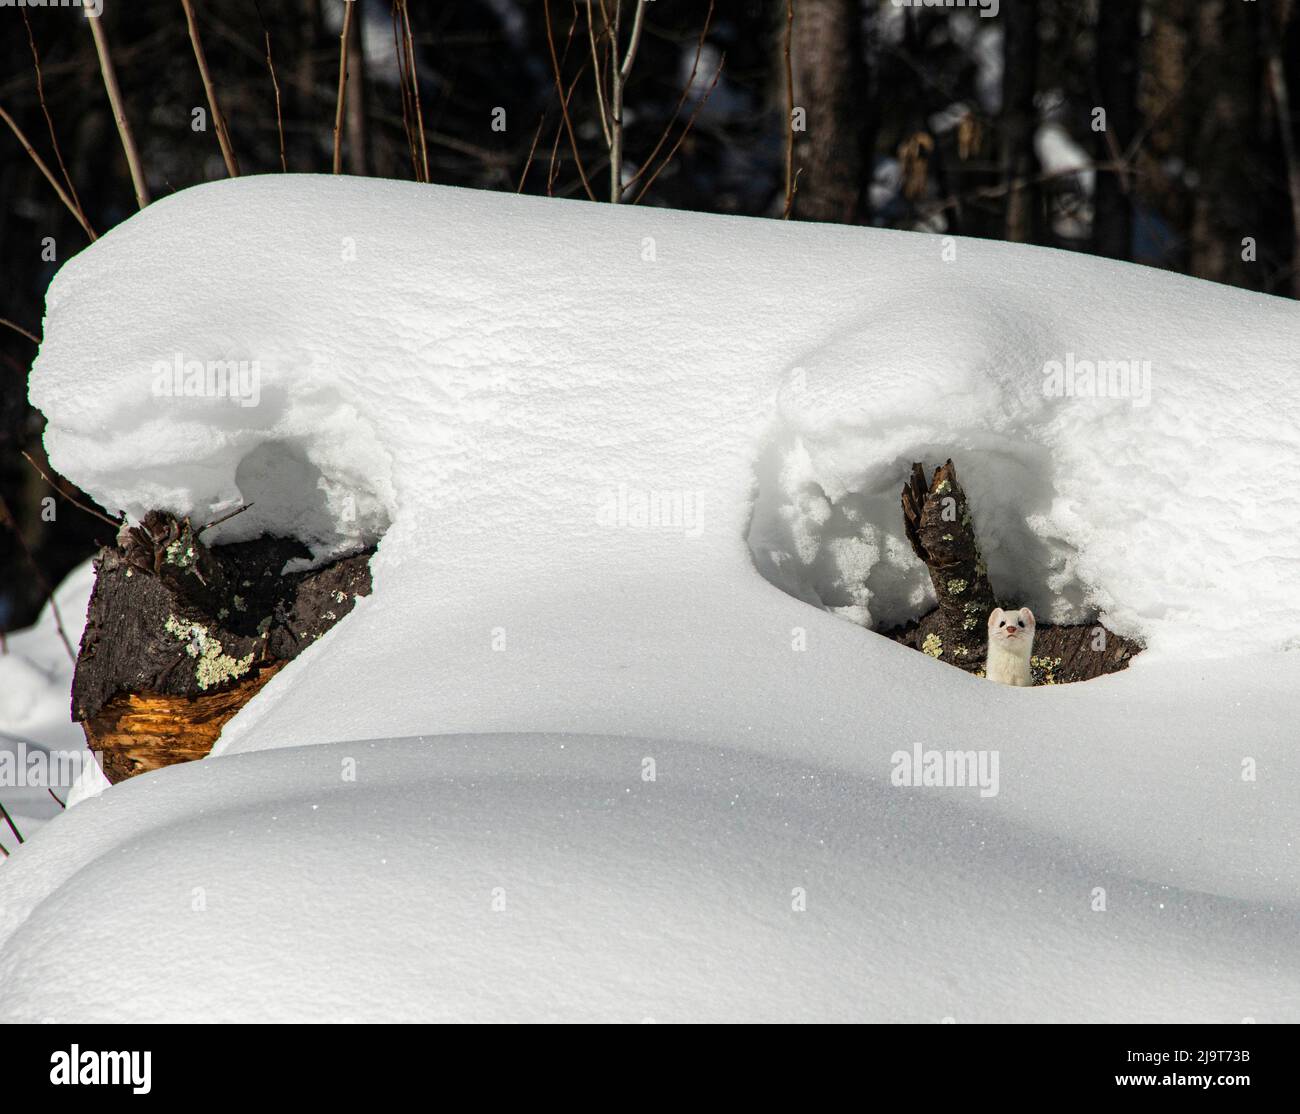 USA, Vermont, Morrisville, Jopson Lane, ermine in snow, hiding under fallen tree Stock Photo